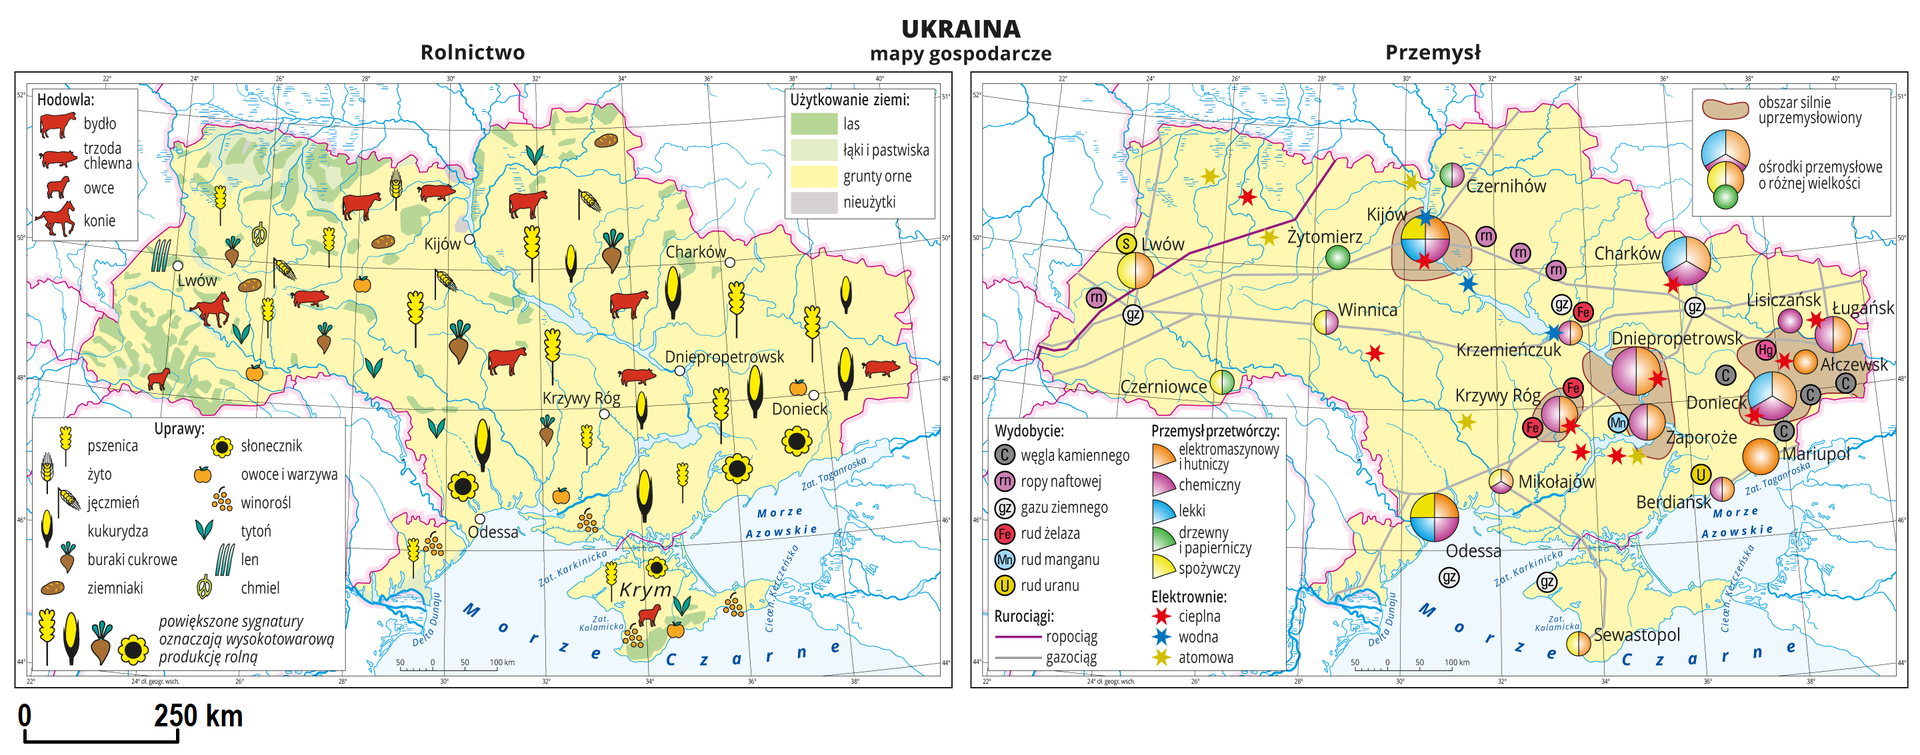 Ilustracja przedstawia dwie mapy gospodarcze Ukrainy. Mapa pierwsza – rolnictwo, mapa druga – przemysł. Na mapie rolnictwa tło w kolorze żółtym (grunty orne), jasnozielonym (łąki i pastwiska), zielonym (lasy) i szarym (nieużytki). Na mapie sygnatury obrazujące uprawy roślin (pszenica, żyto, jęczmień, kukurydza, buraki cukrowe, ziemniaki, słonecznik, owoce i warzywa, winorośl, tytoń, len, chmiel) oraz hodowlę zwierząt (bydło, trzoda chlewna, owce i konie). Powiększone sygnatury na wschodzie kraju oznaczają wysokotowarową produkcję rolną. Na mapie przemysłu sygnatury kołowe – ośrodki przemysłowe. Duże: Donieck, Dniepropetrowsk, Odessa, Kijów, kilkanaście mniejszych. Przemysł elektromaszynowy i hutniczy oraz chemiczny w przewadze, lekki drzewny i papierniczy oraz spożywczy. Kilka elektrowni cieplnych, wodnych i atomowych oznaczonych kolorowymi gwiazdkami, ropociąg i gazociąg oznaczone liniami. Sygnaturami oznaczone wydobycie węgla kamiennego, ropy naftowej, gazu ziemnego rud żelaza, manganu i uranu. Większość przemysłu i wydobycia skupiona jest na wschodzie kraju. Kolorem brązowym oznaczono obszary silnie uprzemysłowione. Obejmują one duże miasta. Obie mapy zawierają południki i równoleżniki, dookoła map w białych ramkach opisano współrzędne co dwa stopnie.